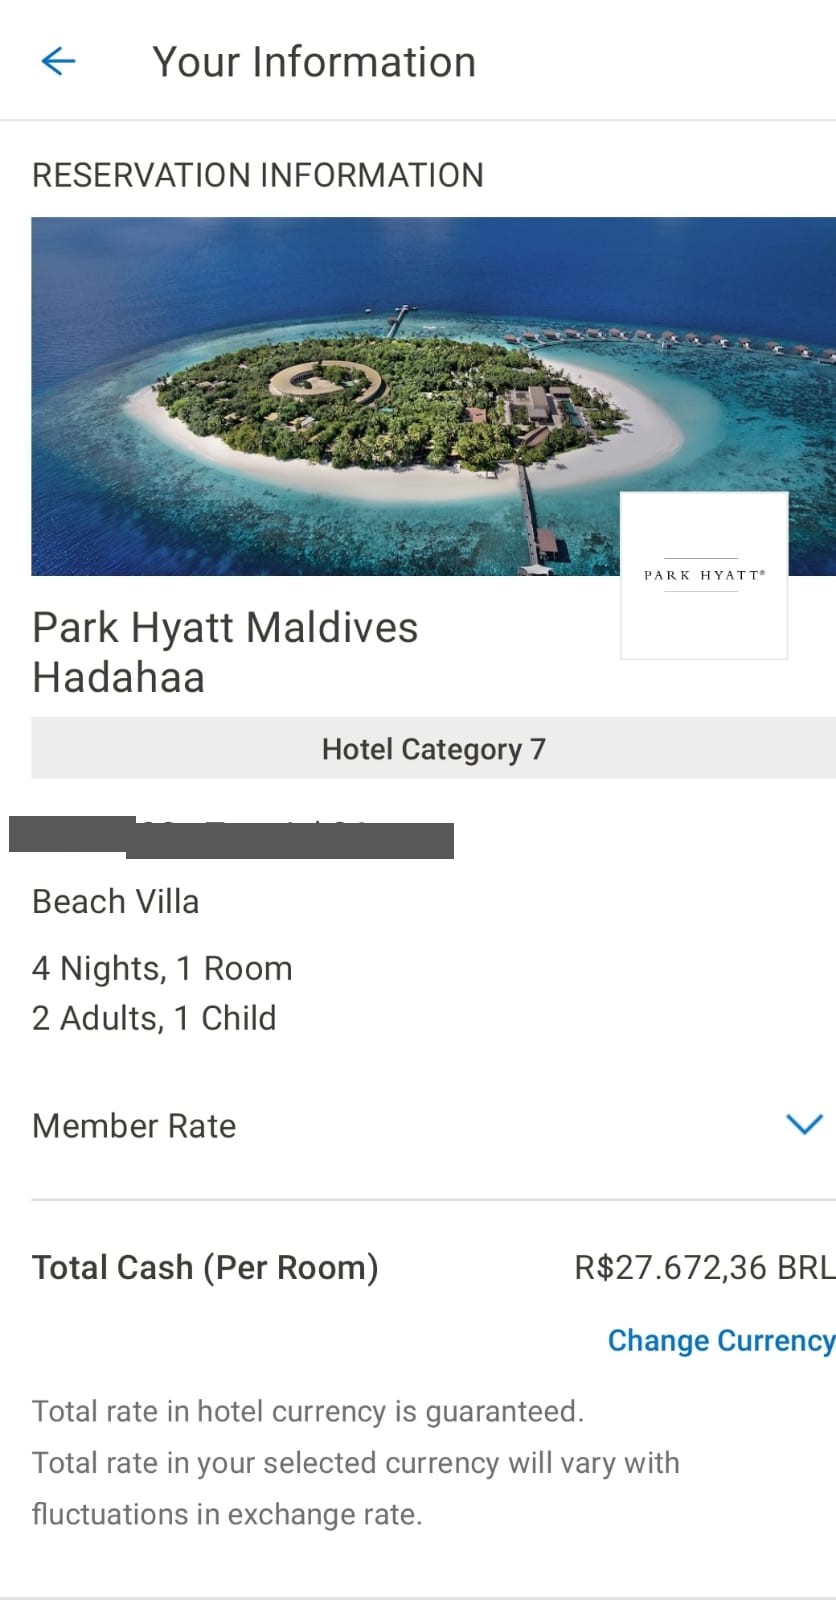 Como eu vou me hospedar no Park Hyatt nas Maldivas economizando mais de 60%